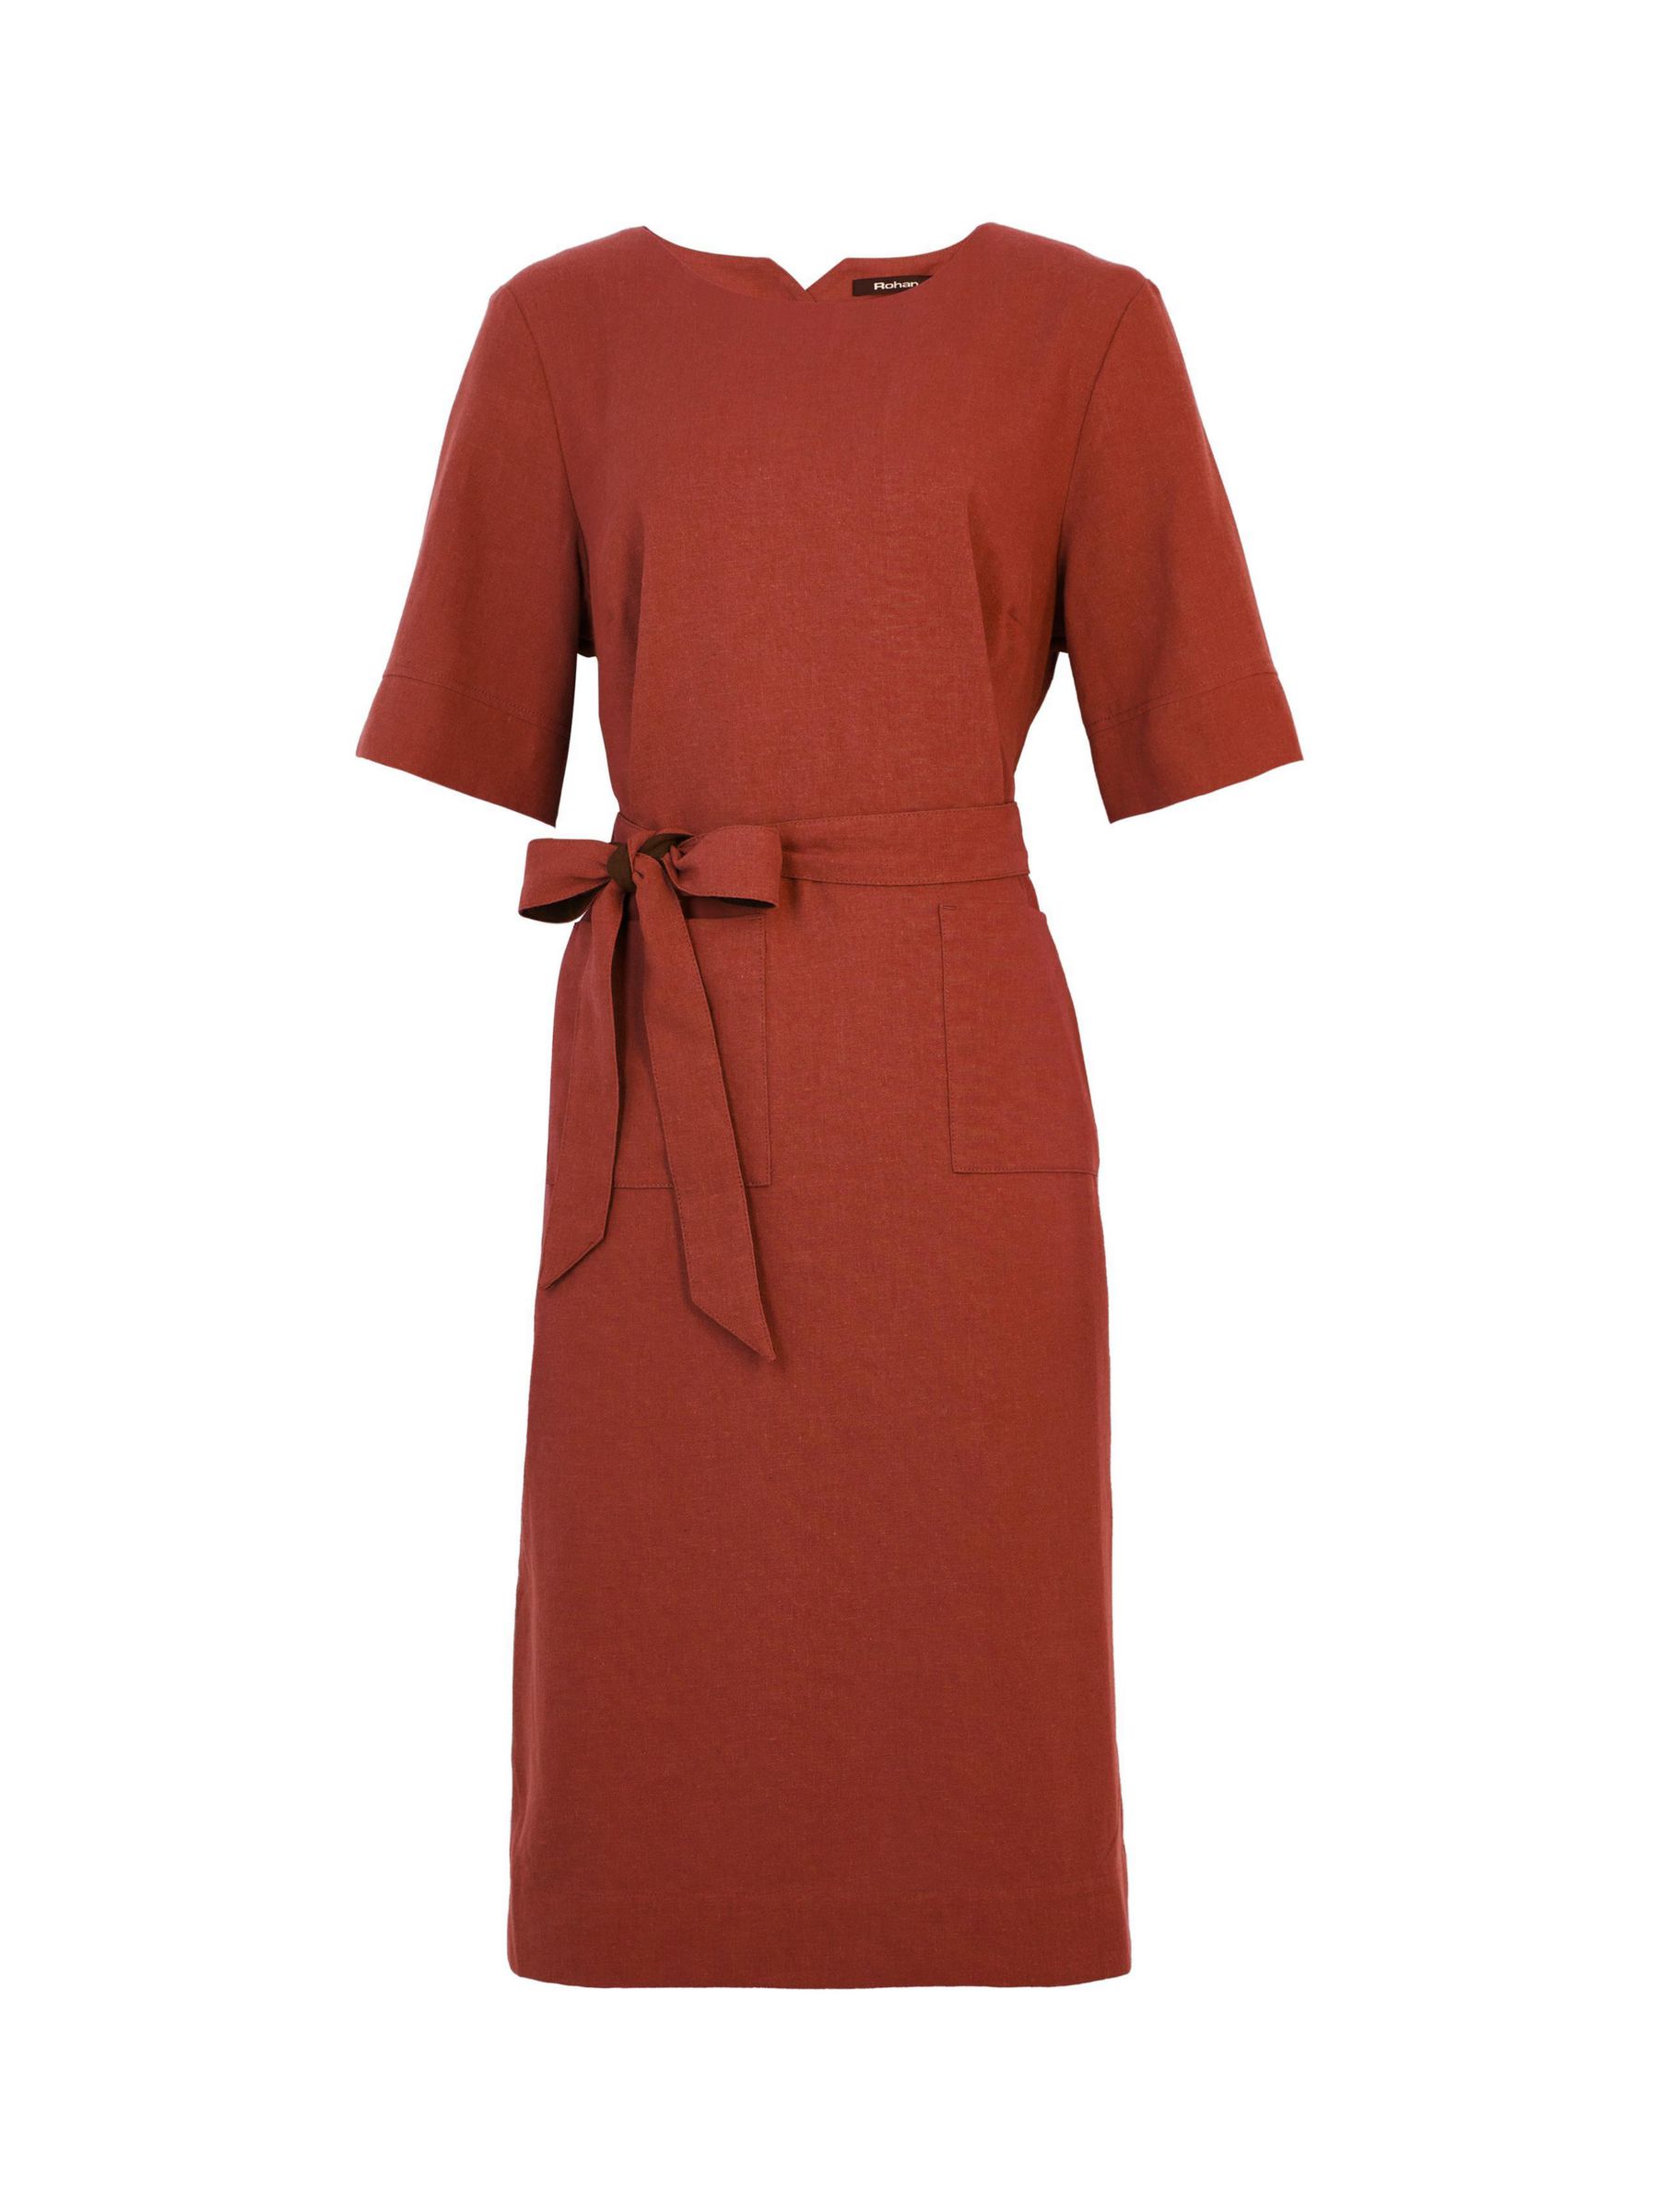 Rohan Brisa Linen Blend Dress, Coast Red, 8R